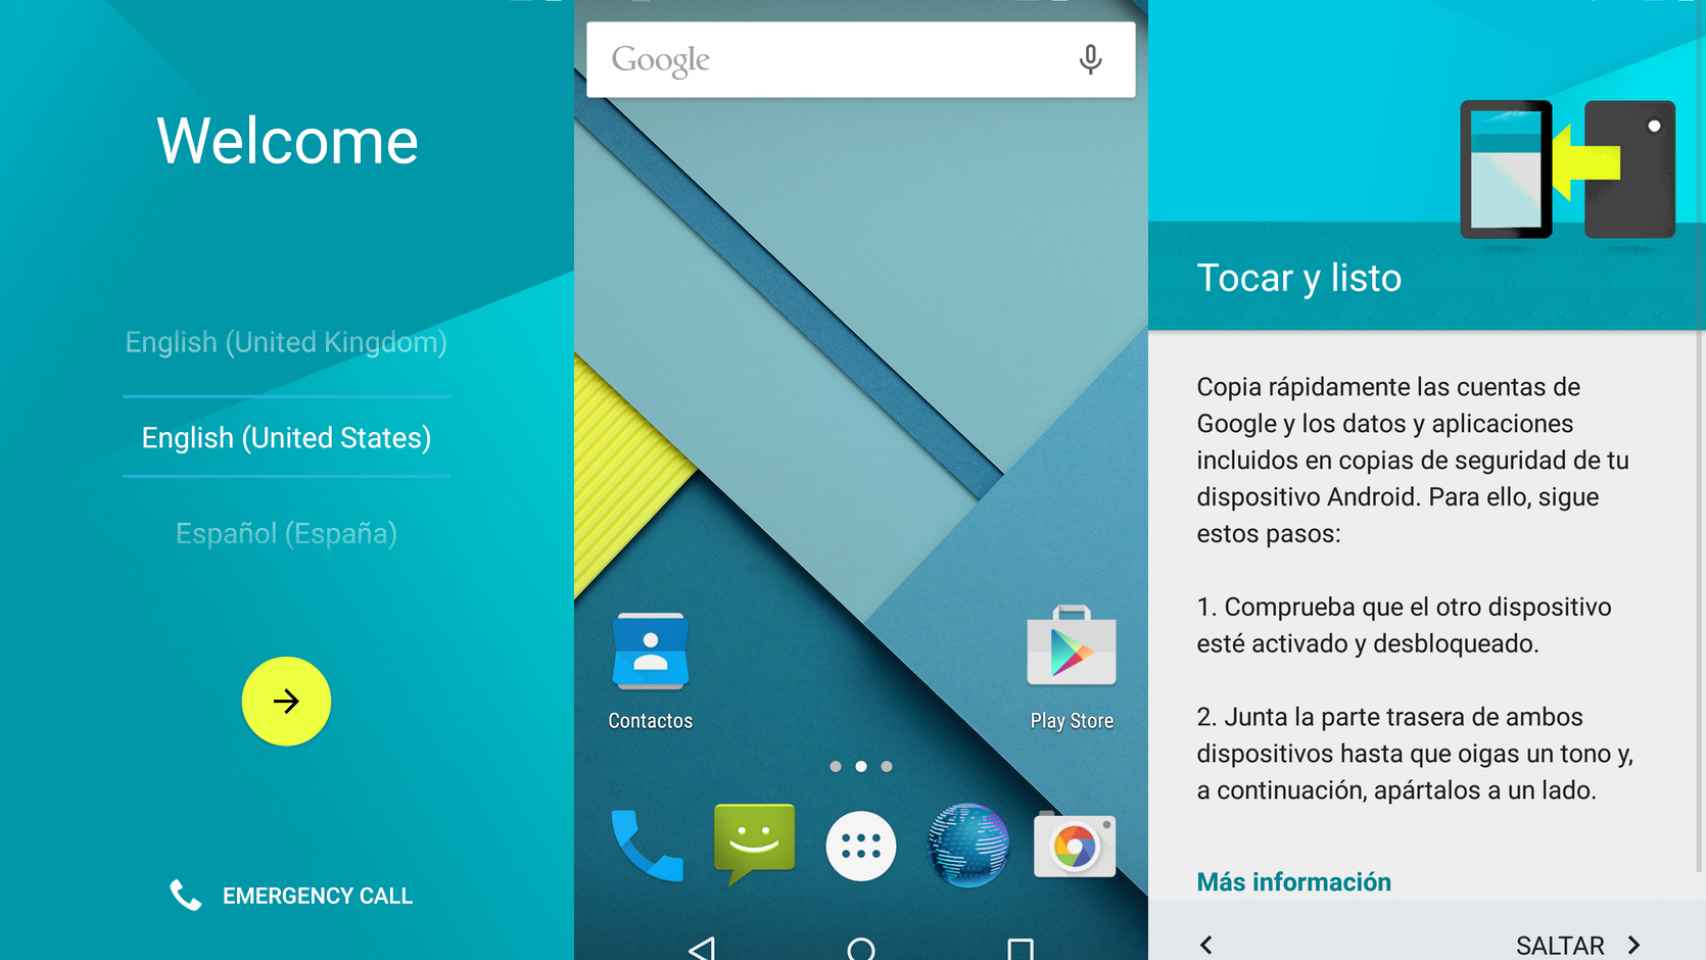 Descarga e instala Android 5.0 Lollipop Preview para Nexus 5 y Nexus 7